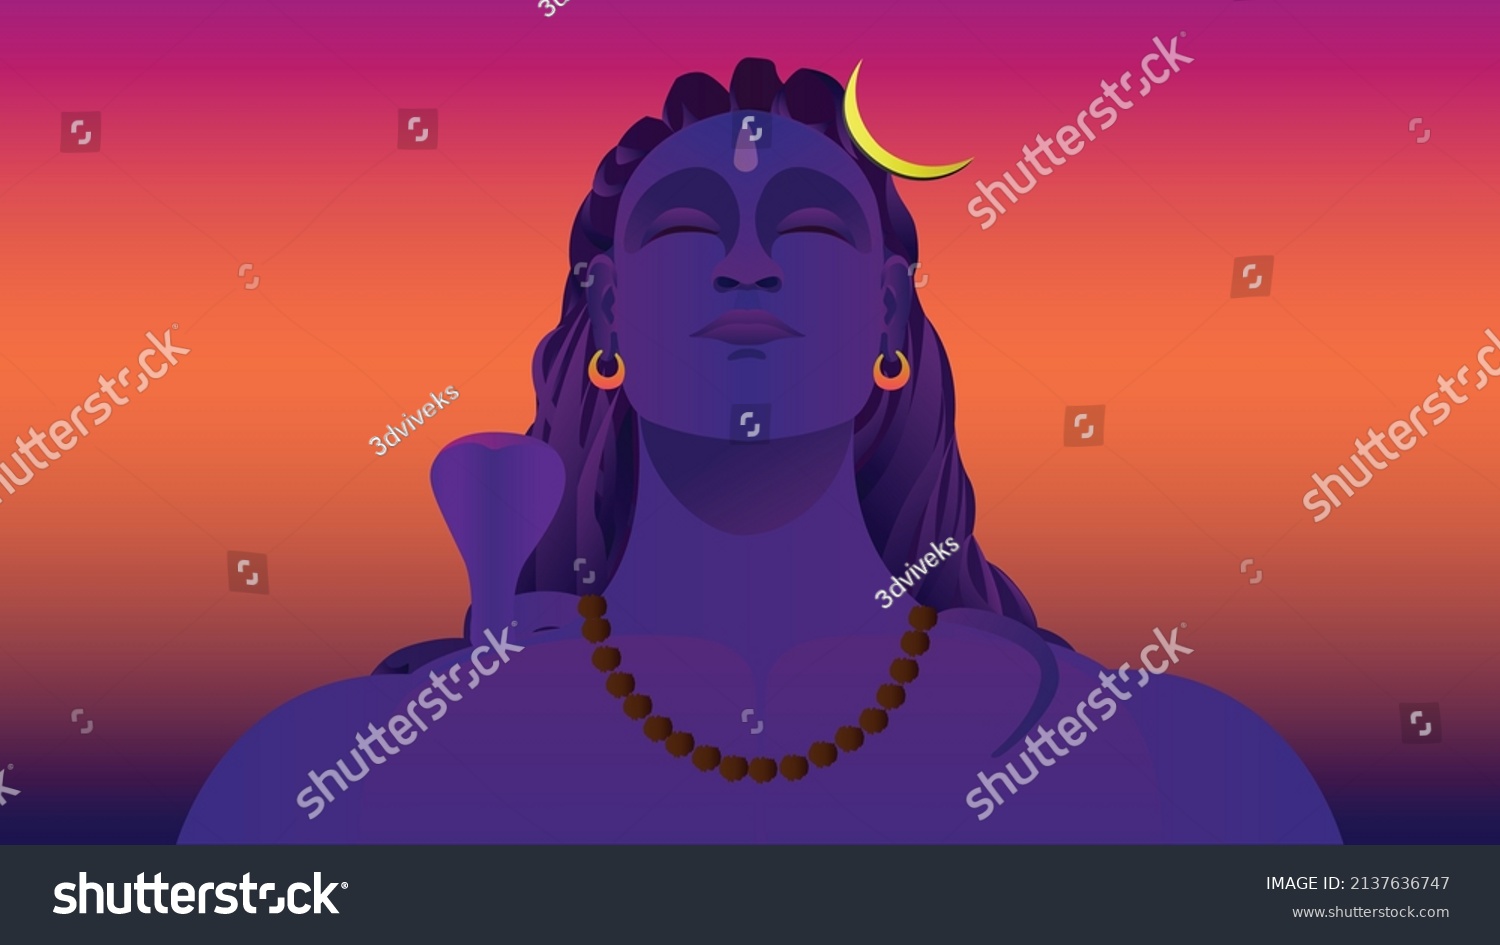 SVG of Vibrant Illustration of Lord Shiva Adiyogi Shiv Shankar Bholenath svg